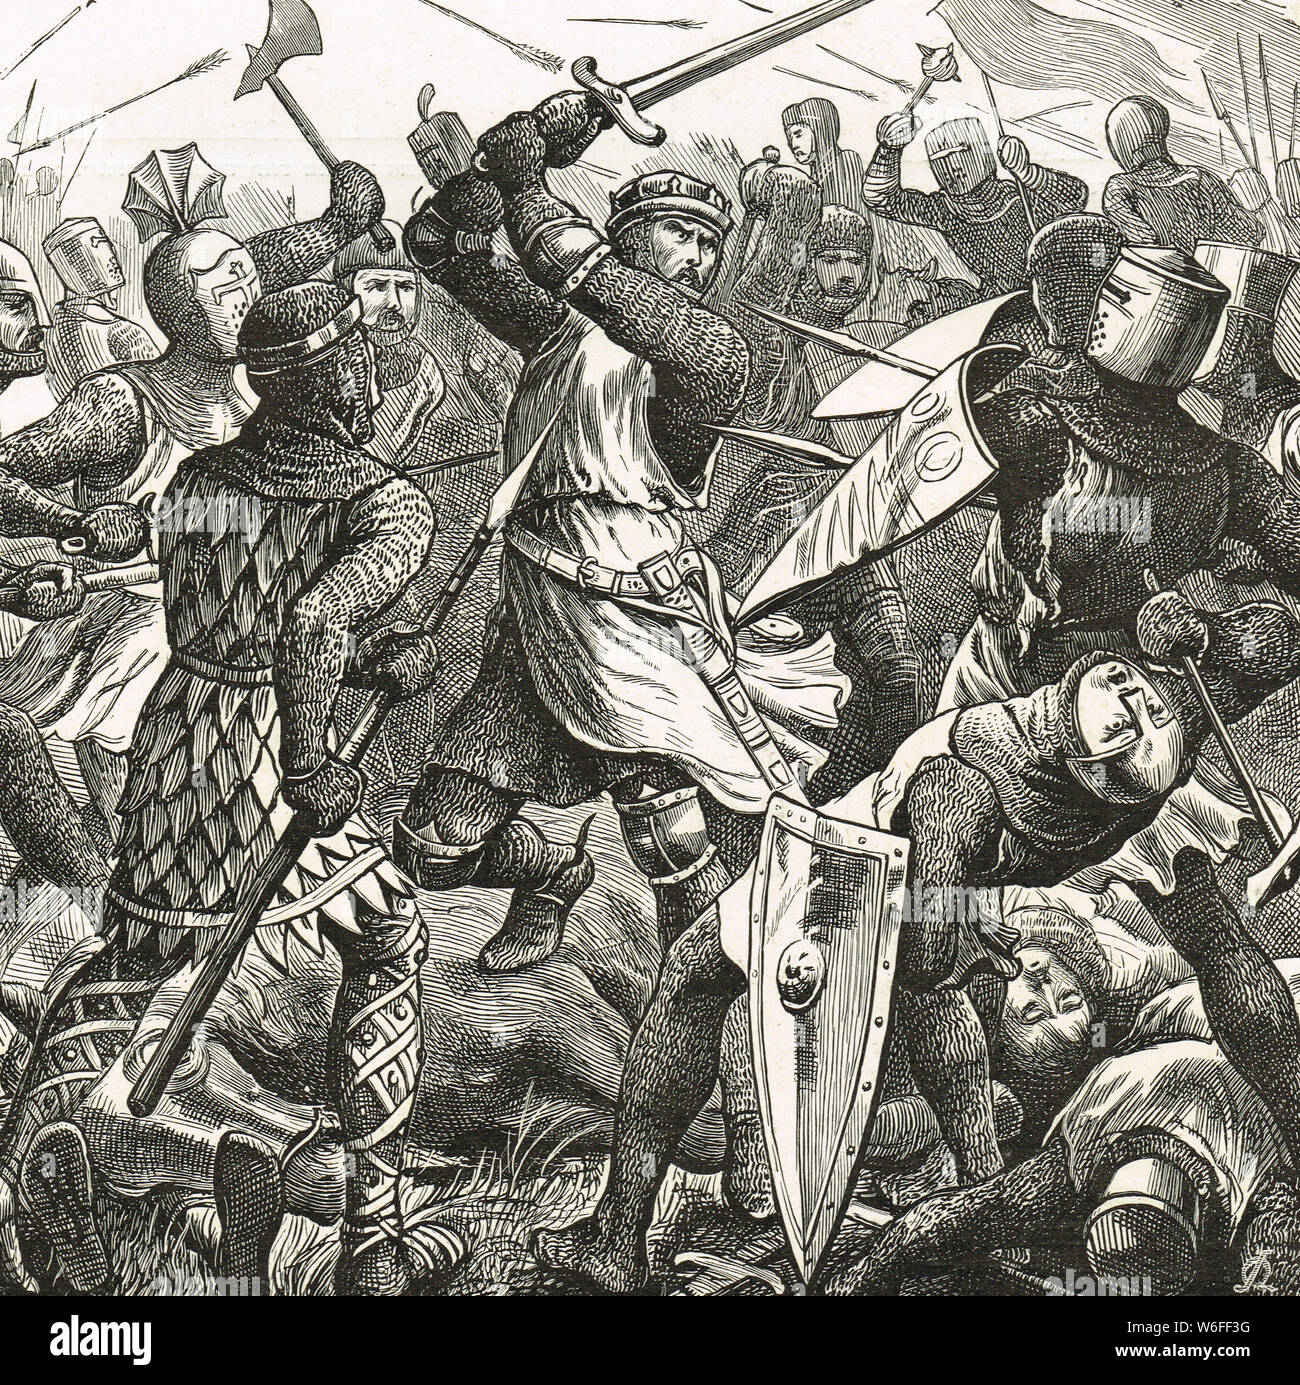 Pas de quartier pour les traîtres, Simon de Montfort, comte de Leicester à la bataille d'Evesham, 4 août 1265 Banque D'Images